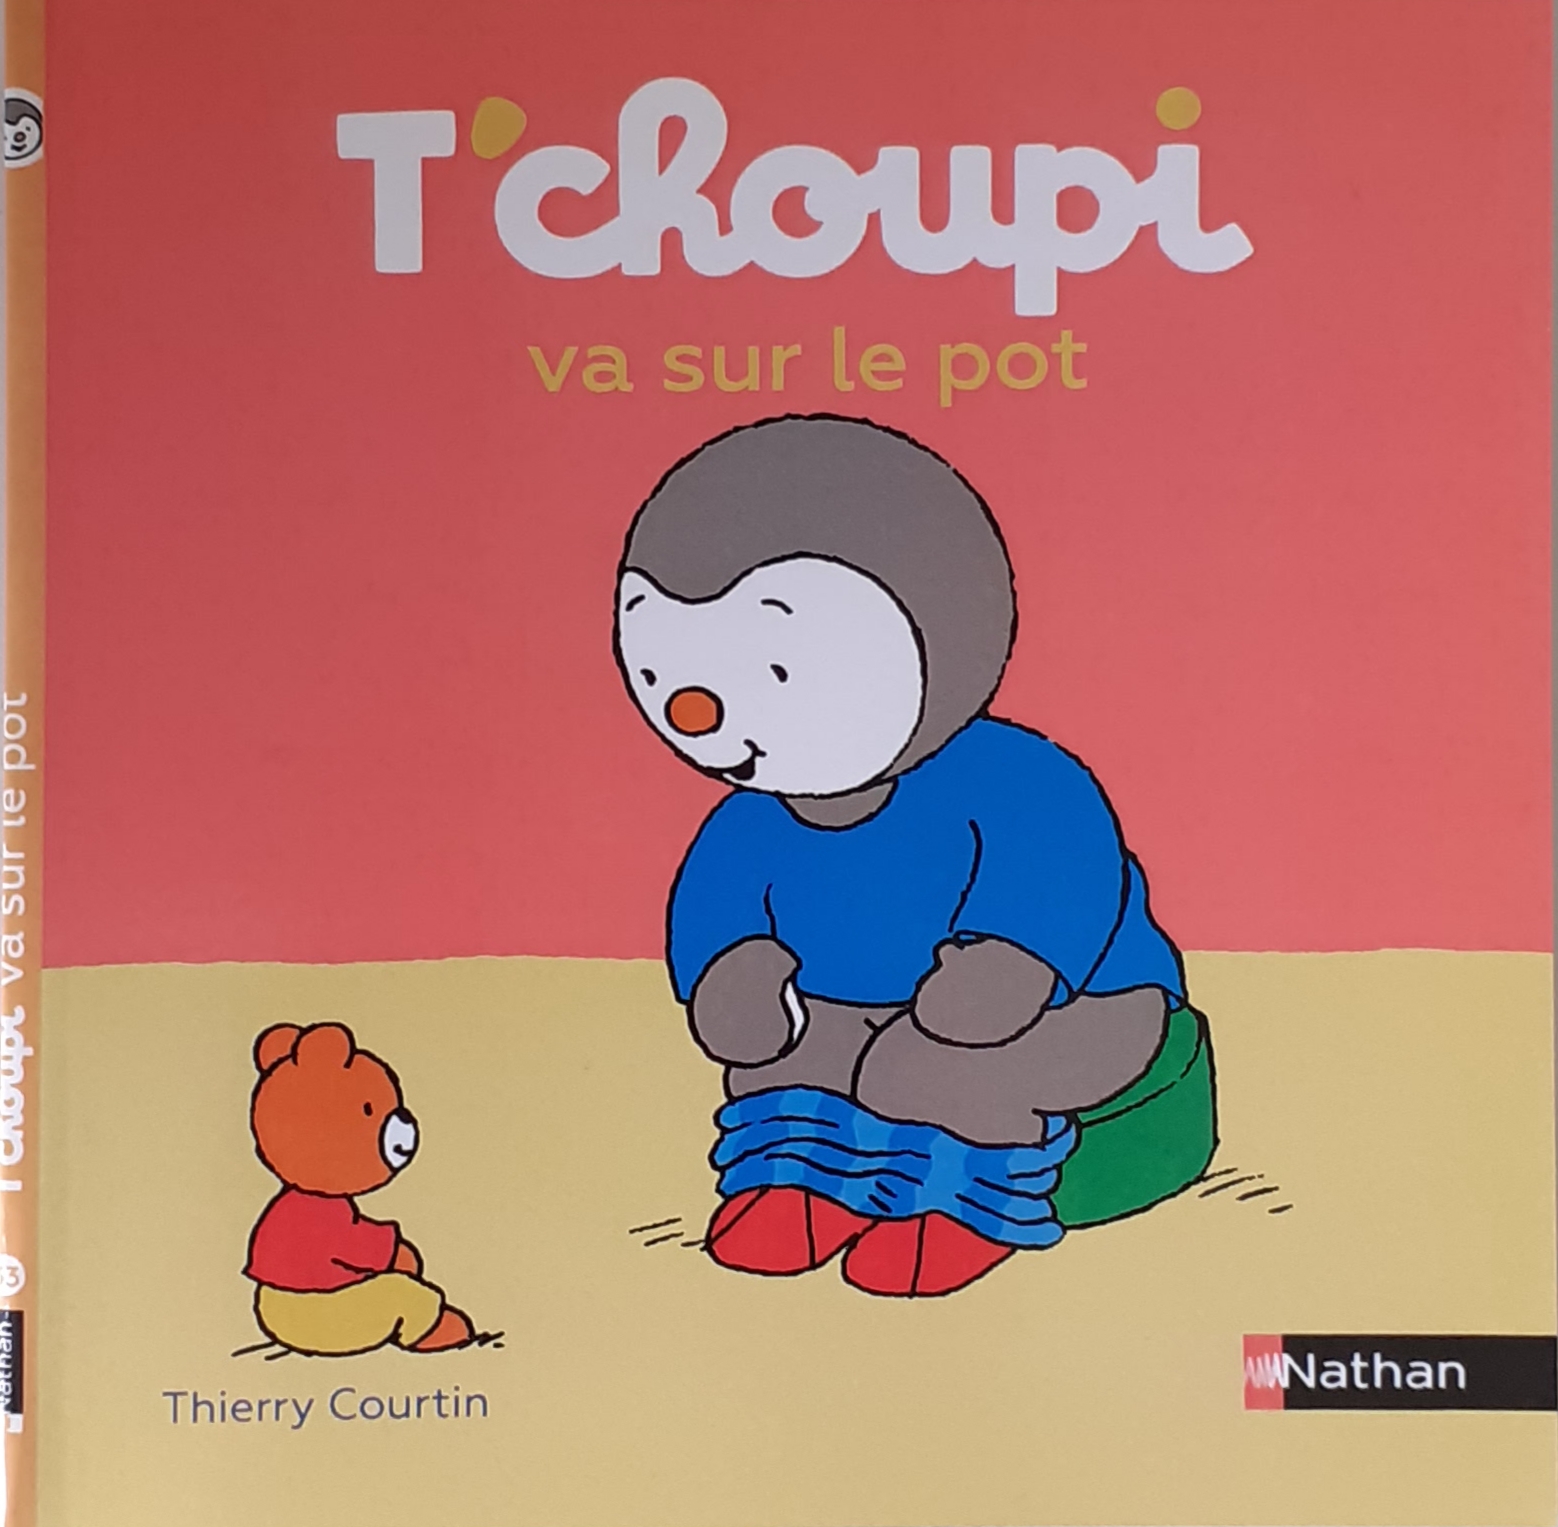 کتاب داستان فرانسه تچوپی به گلدان می رود Tchoupi va sur le pot